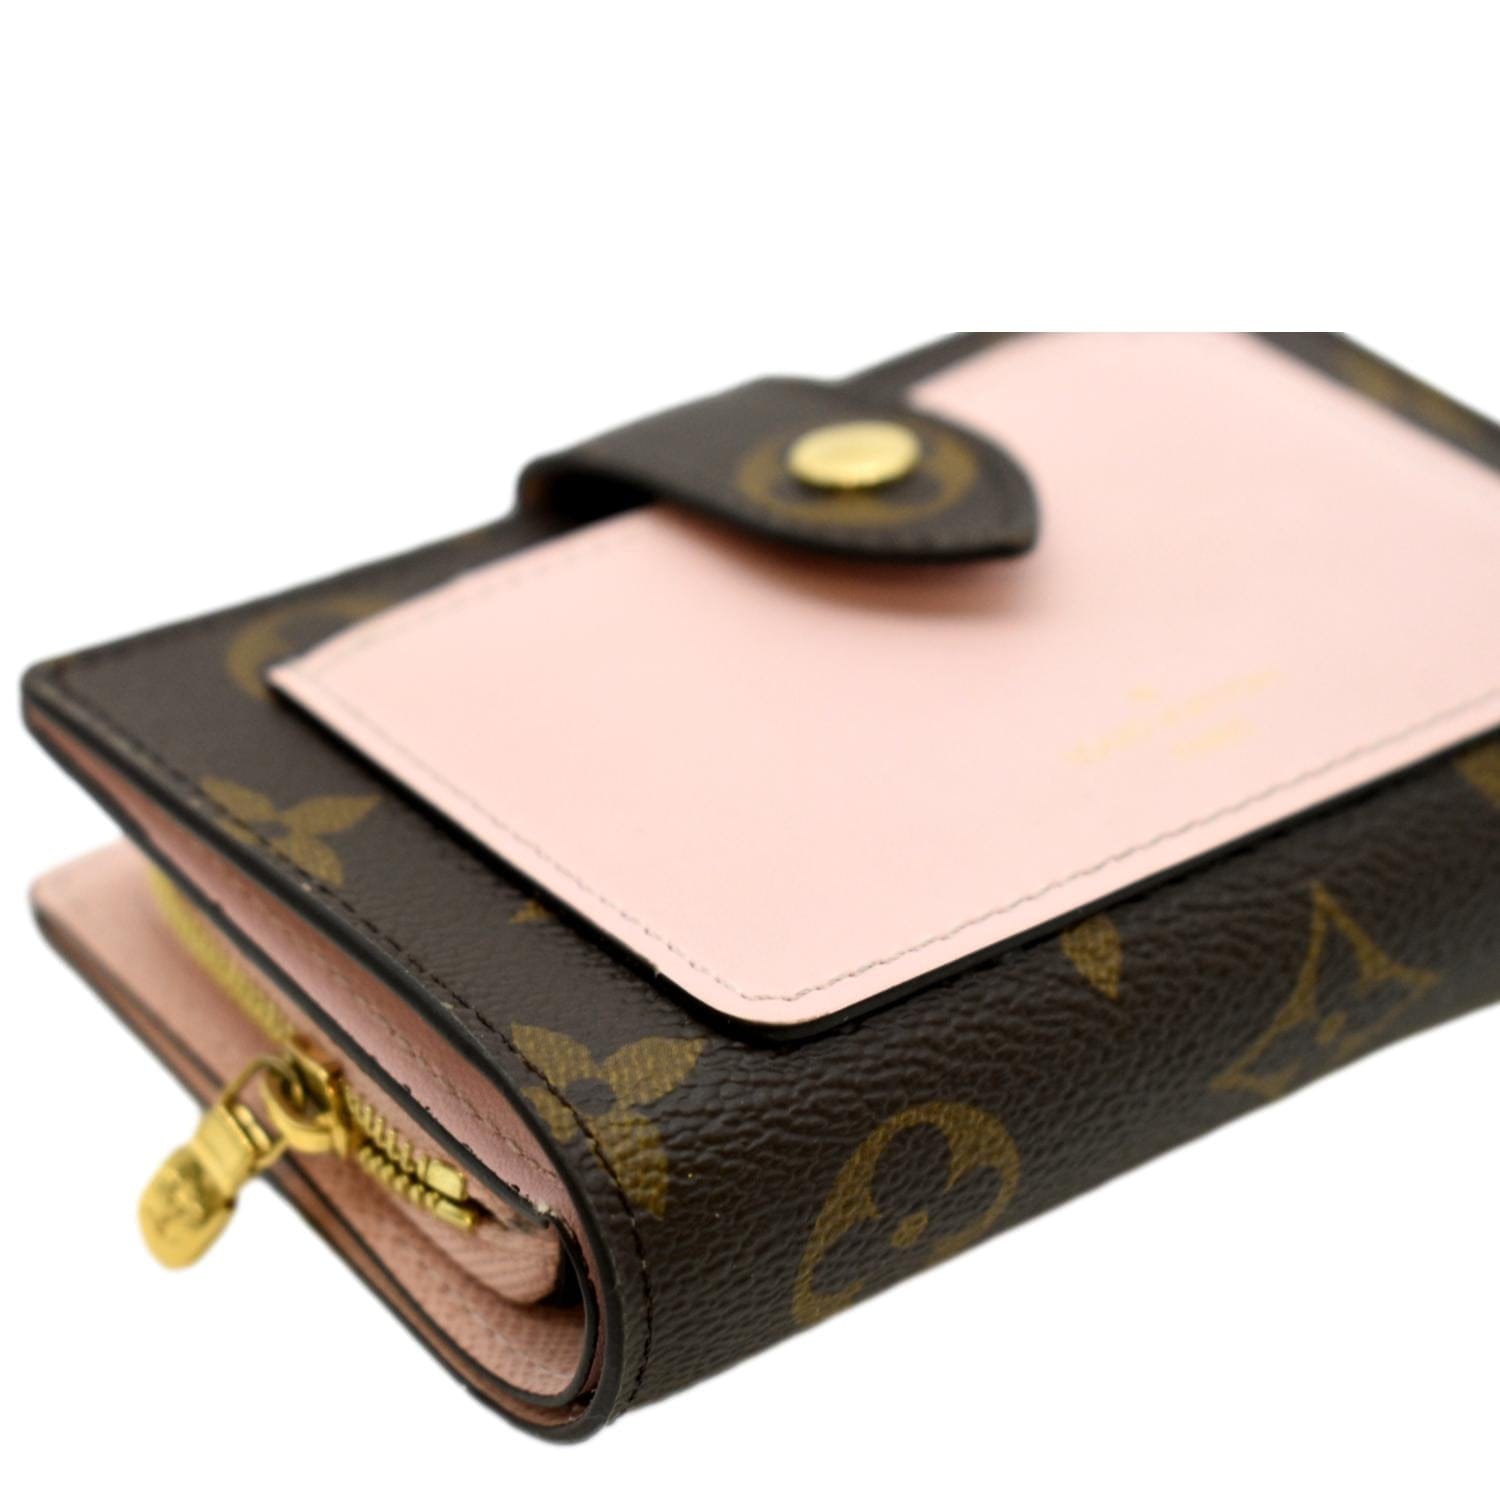 Louis Vuitton, Bags, Louis Vuitton Juliette Wallet Compact Damier